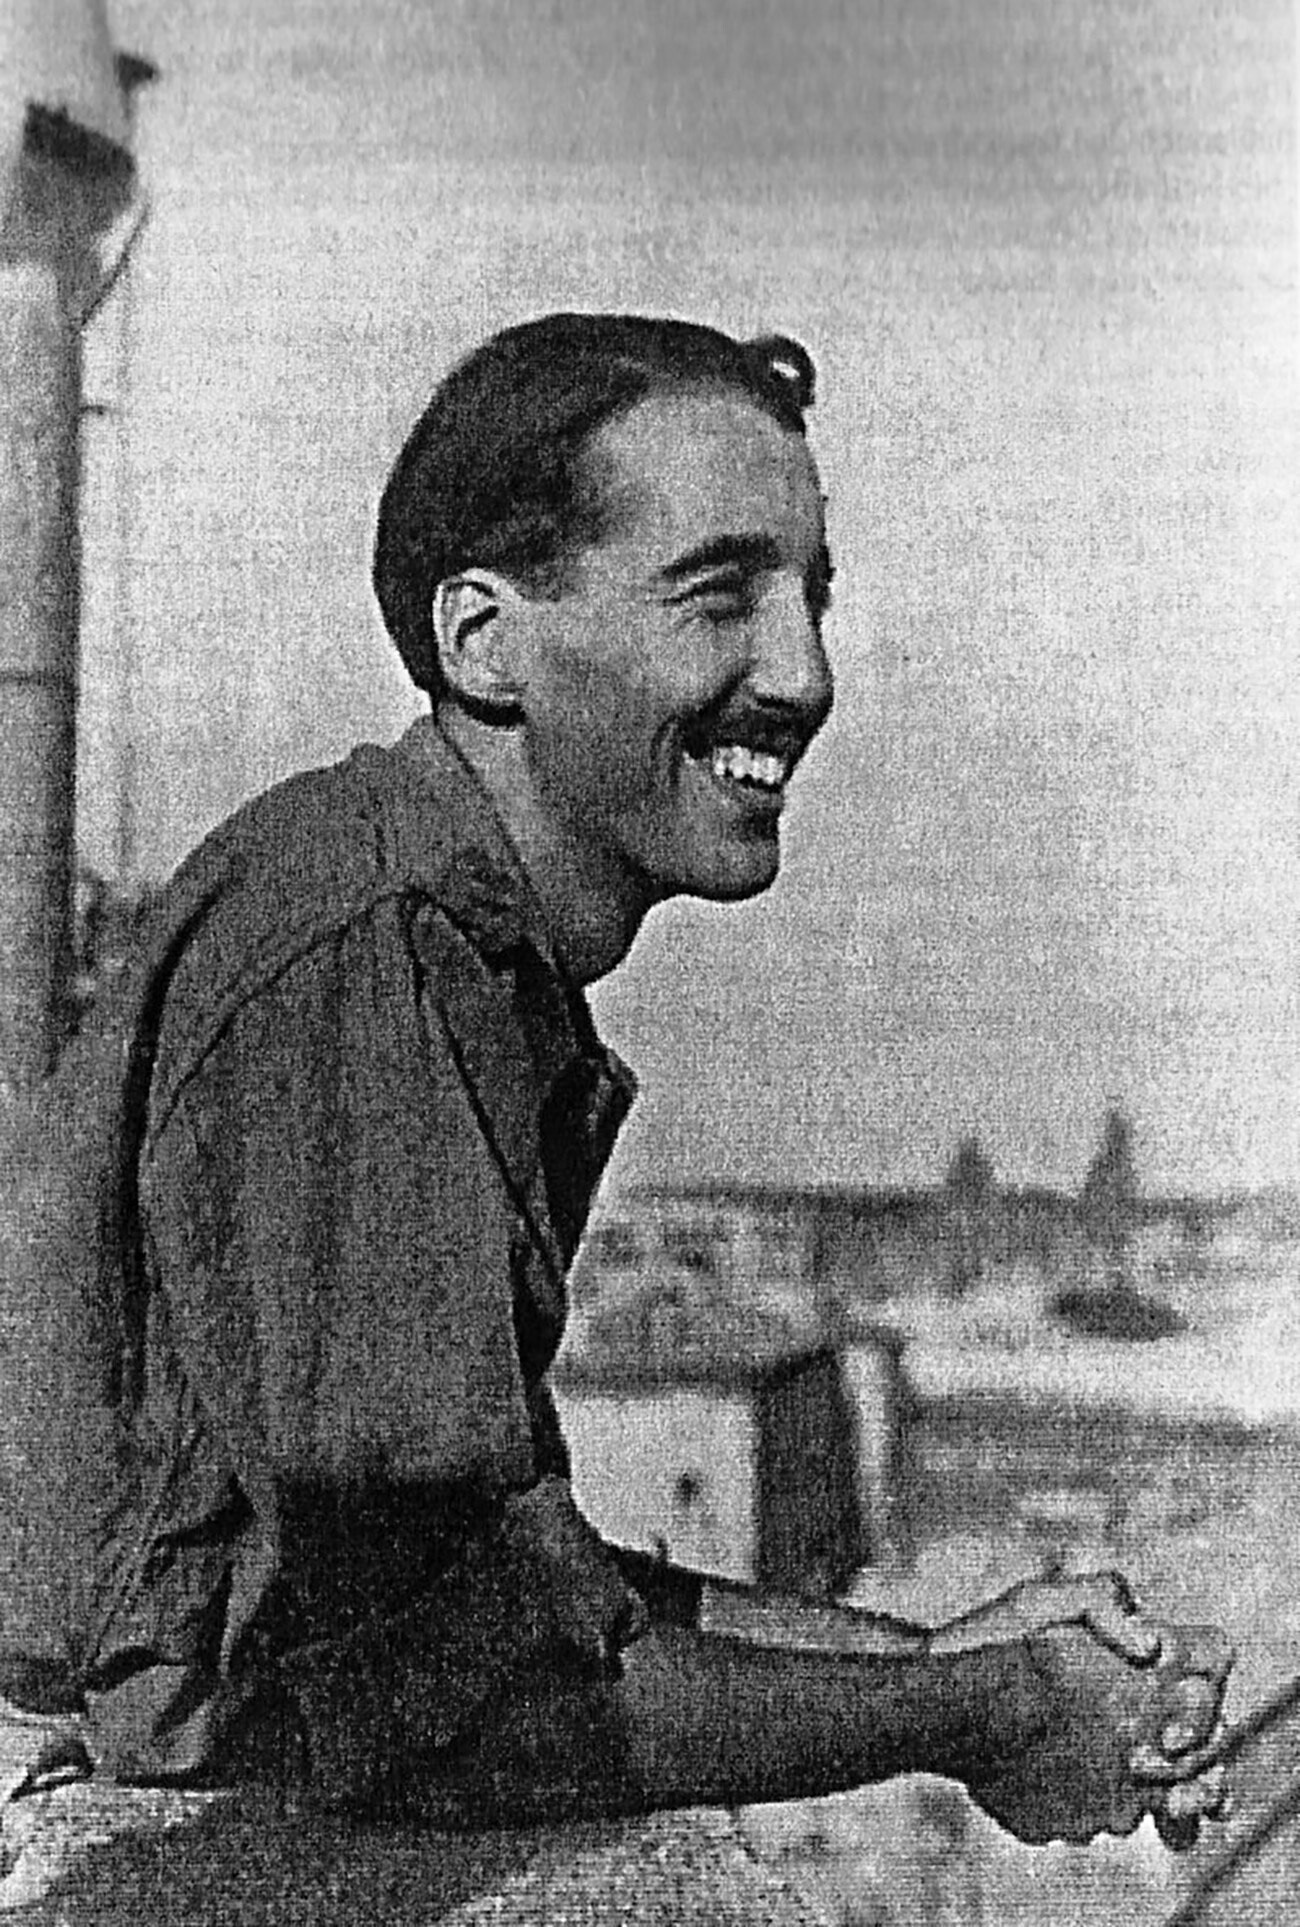 Lee em 1944 